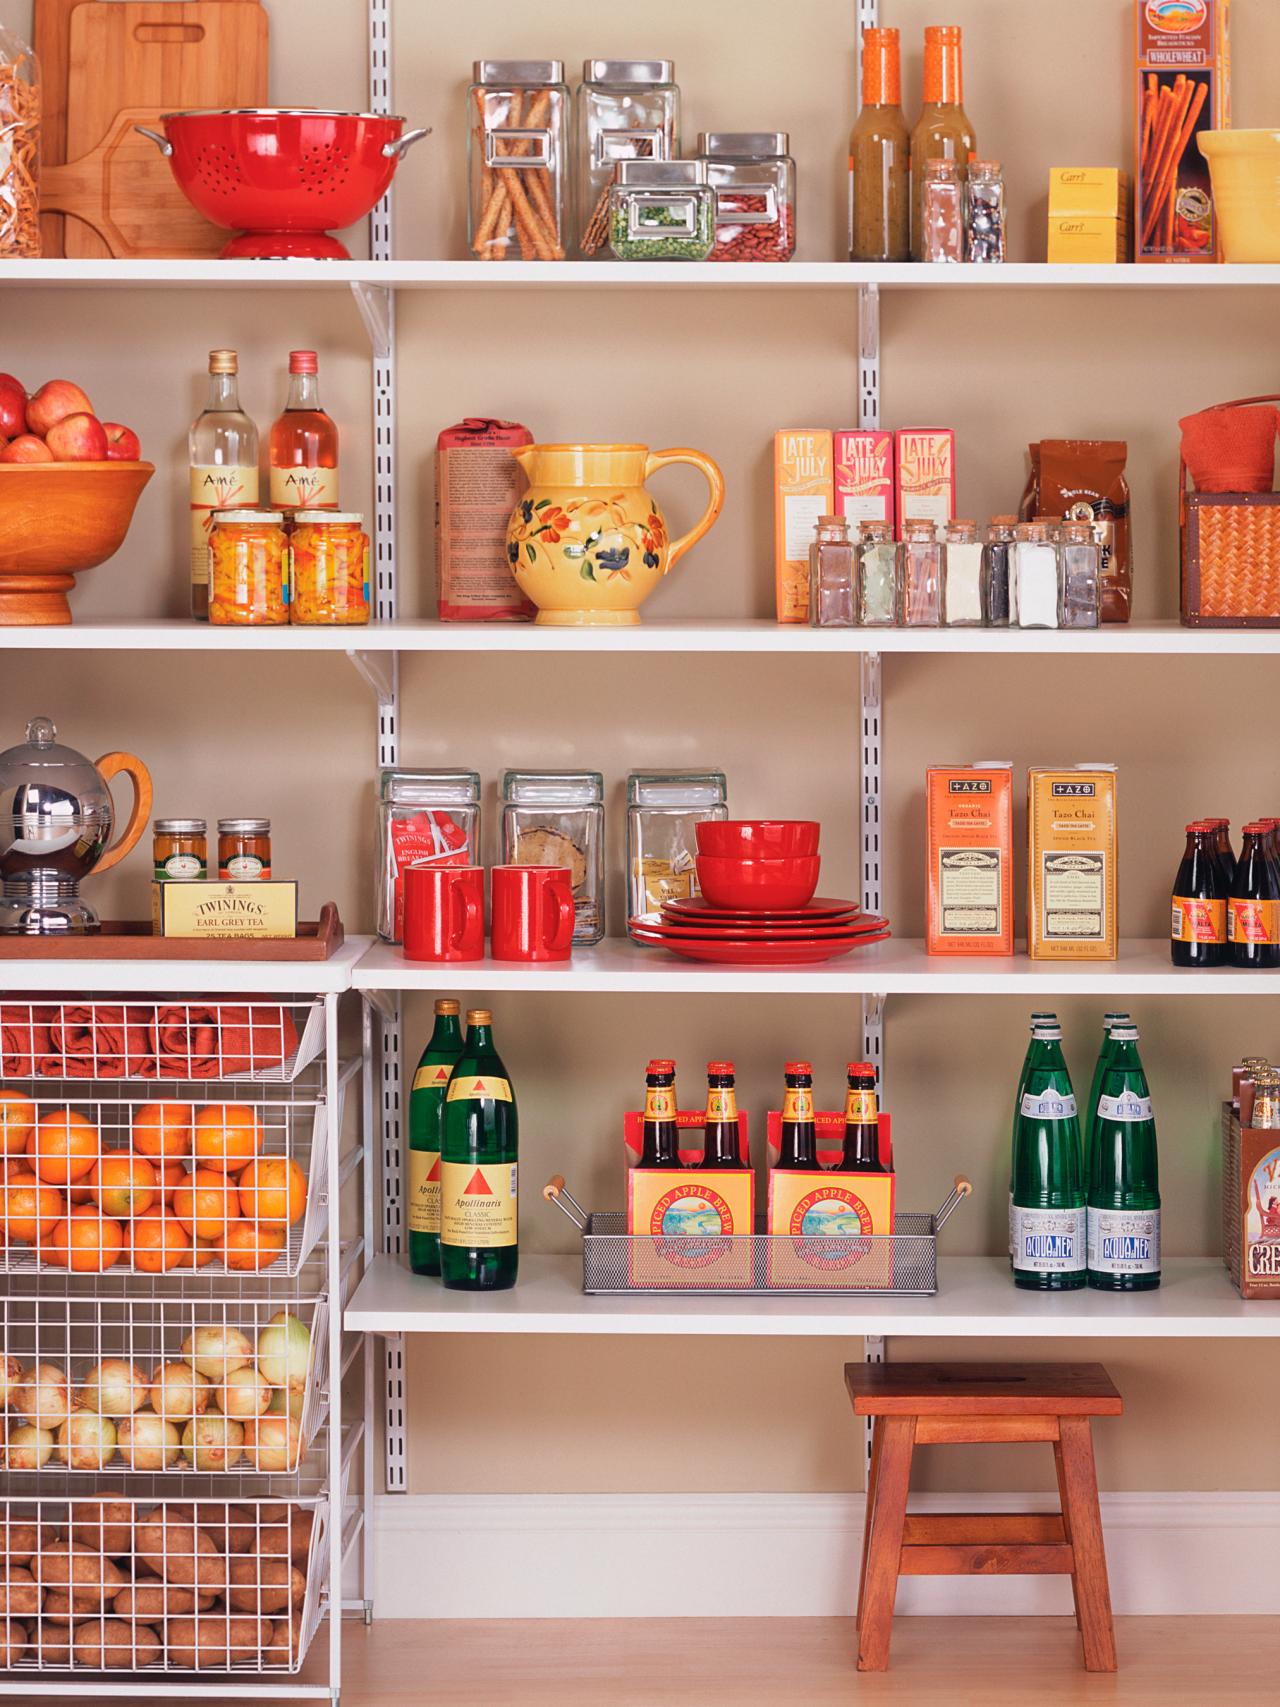 Design Ideas for Storage in the Kitchen Pantry | DIY Kitchen Design 